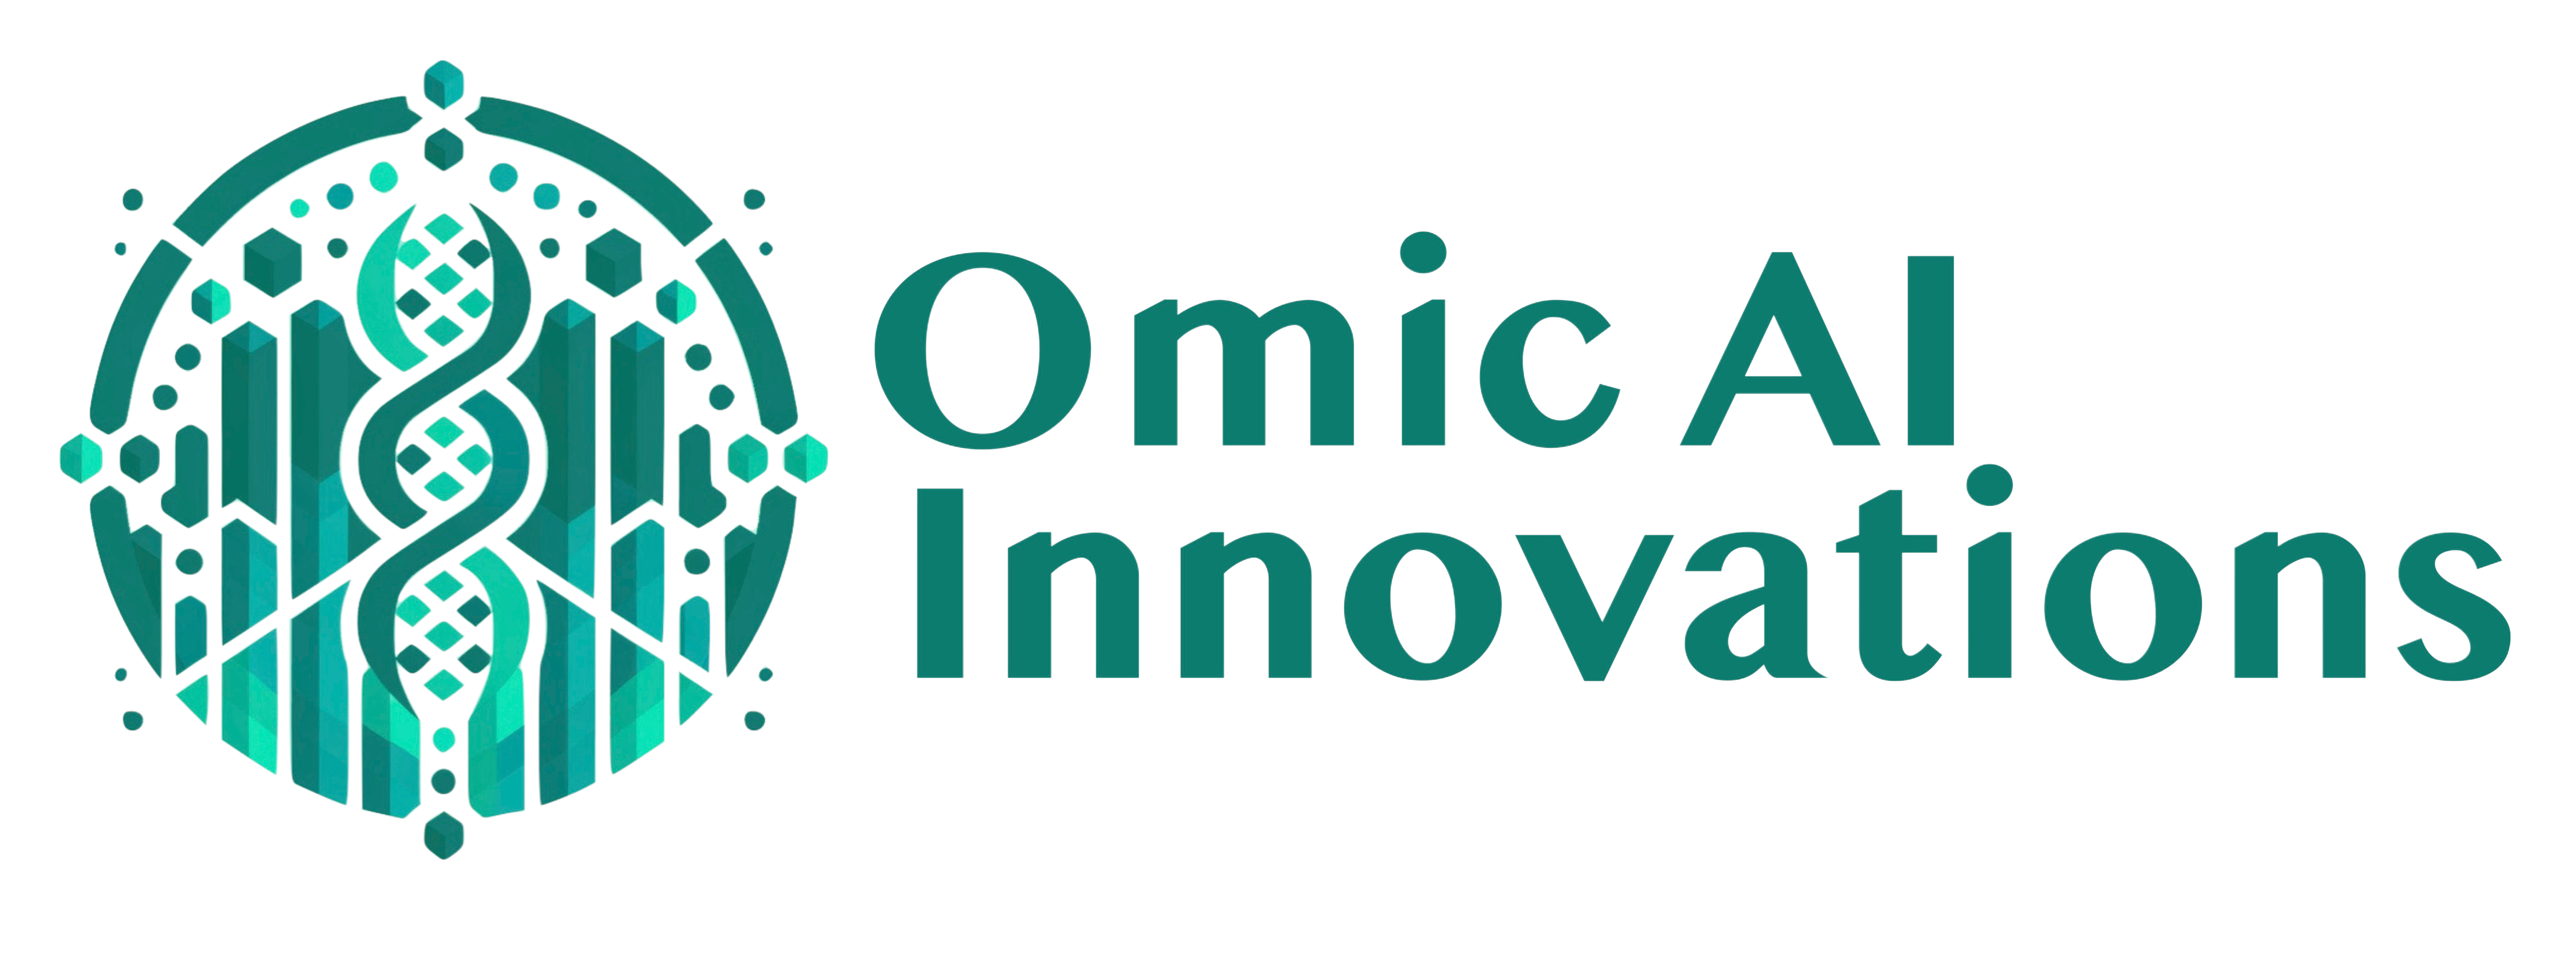 omicai-innovations